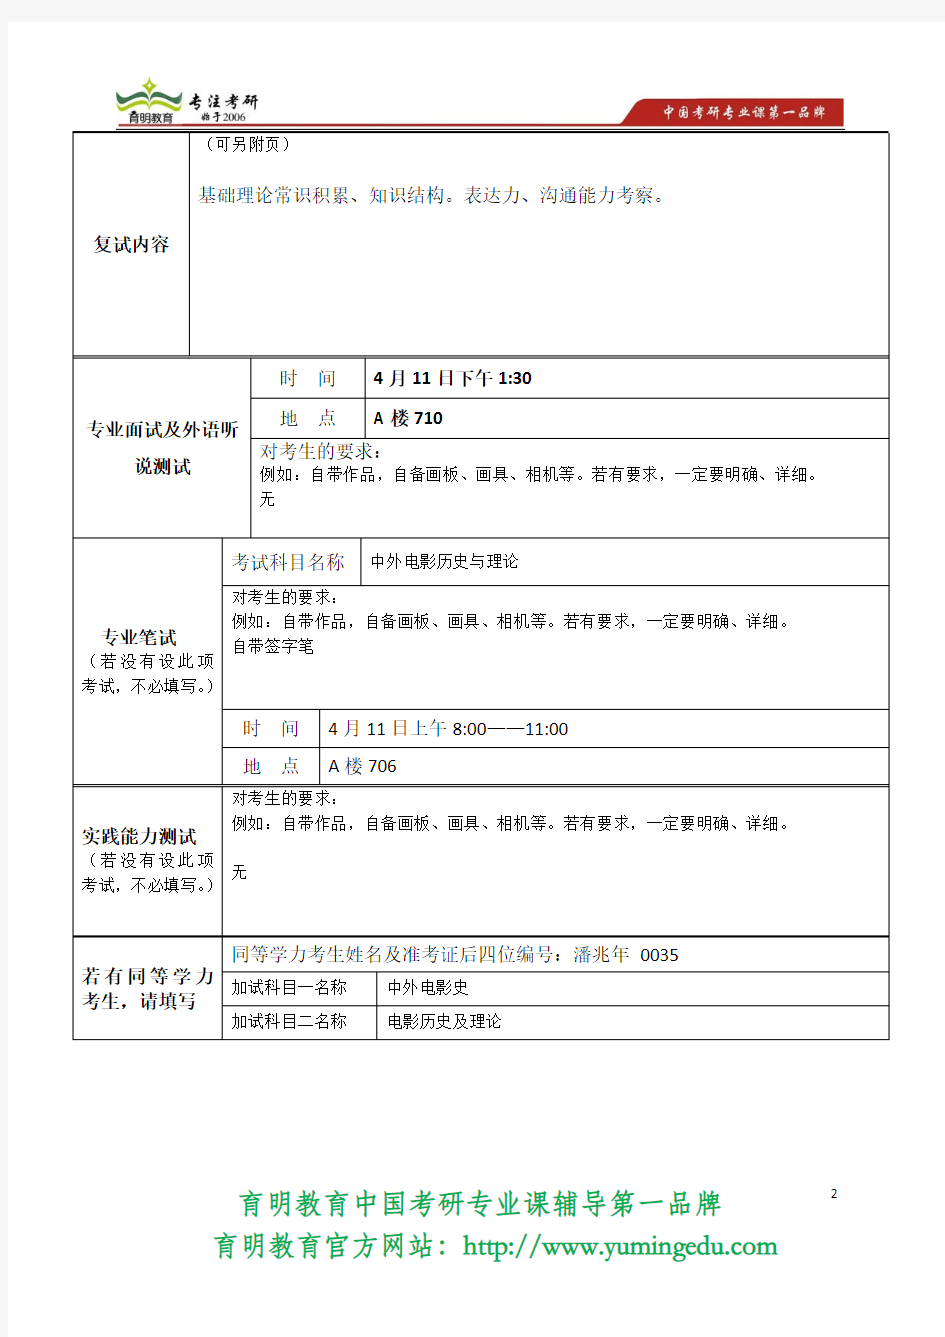 2014年北京电影学院 文学系 中外电影史(学硕) 复试大纲、复试分数线  复试安排